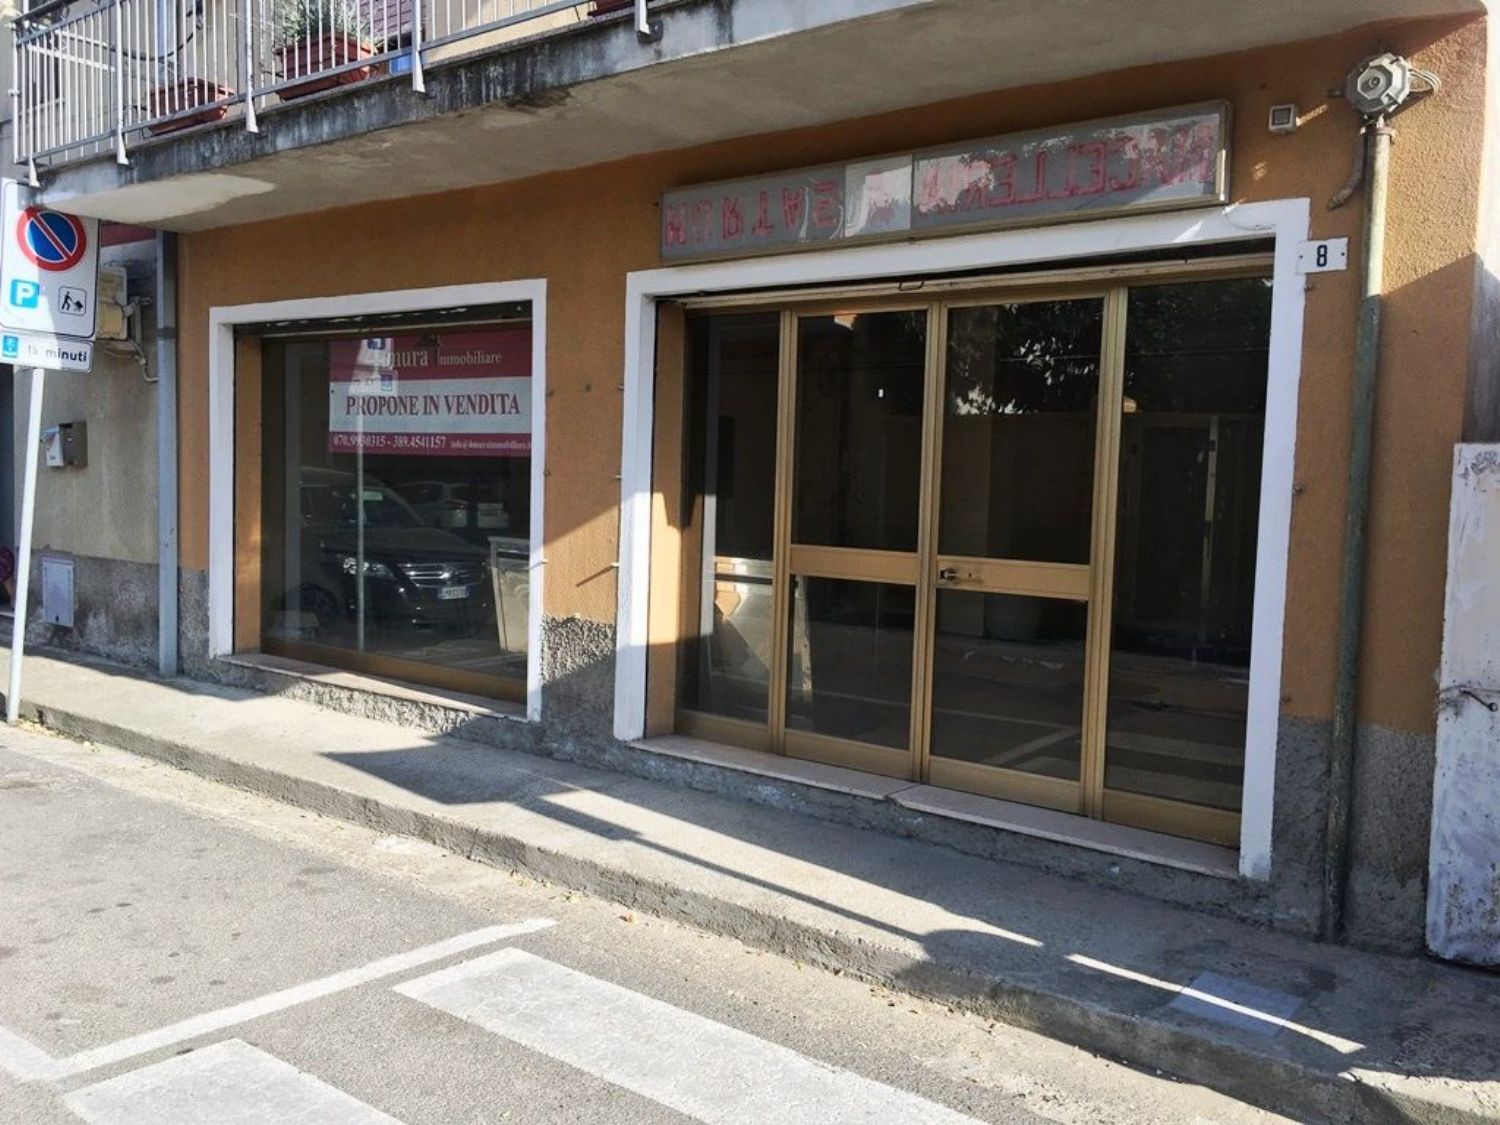 Immobile Commerciale in vendita a Muravera, 9999 locali, prezzo € 60.000 | CambioCasa.it